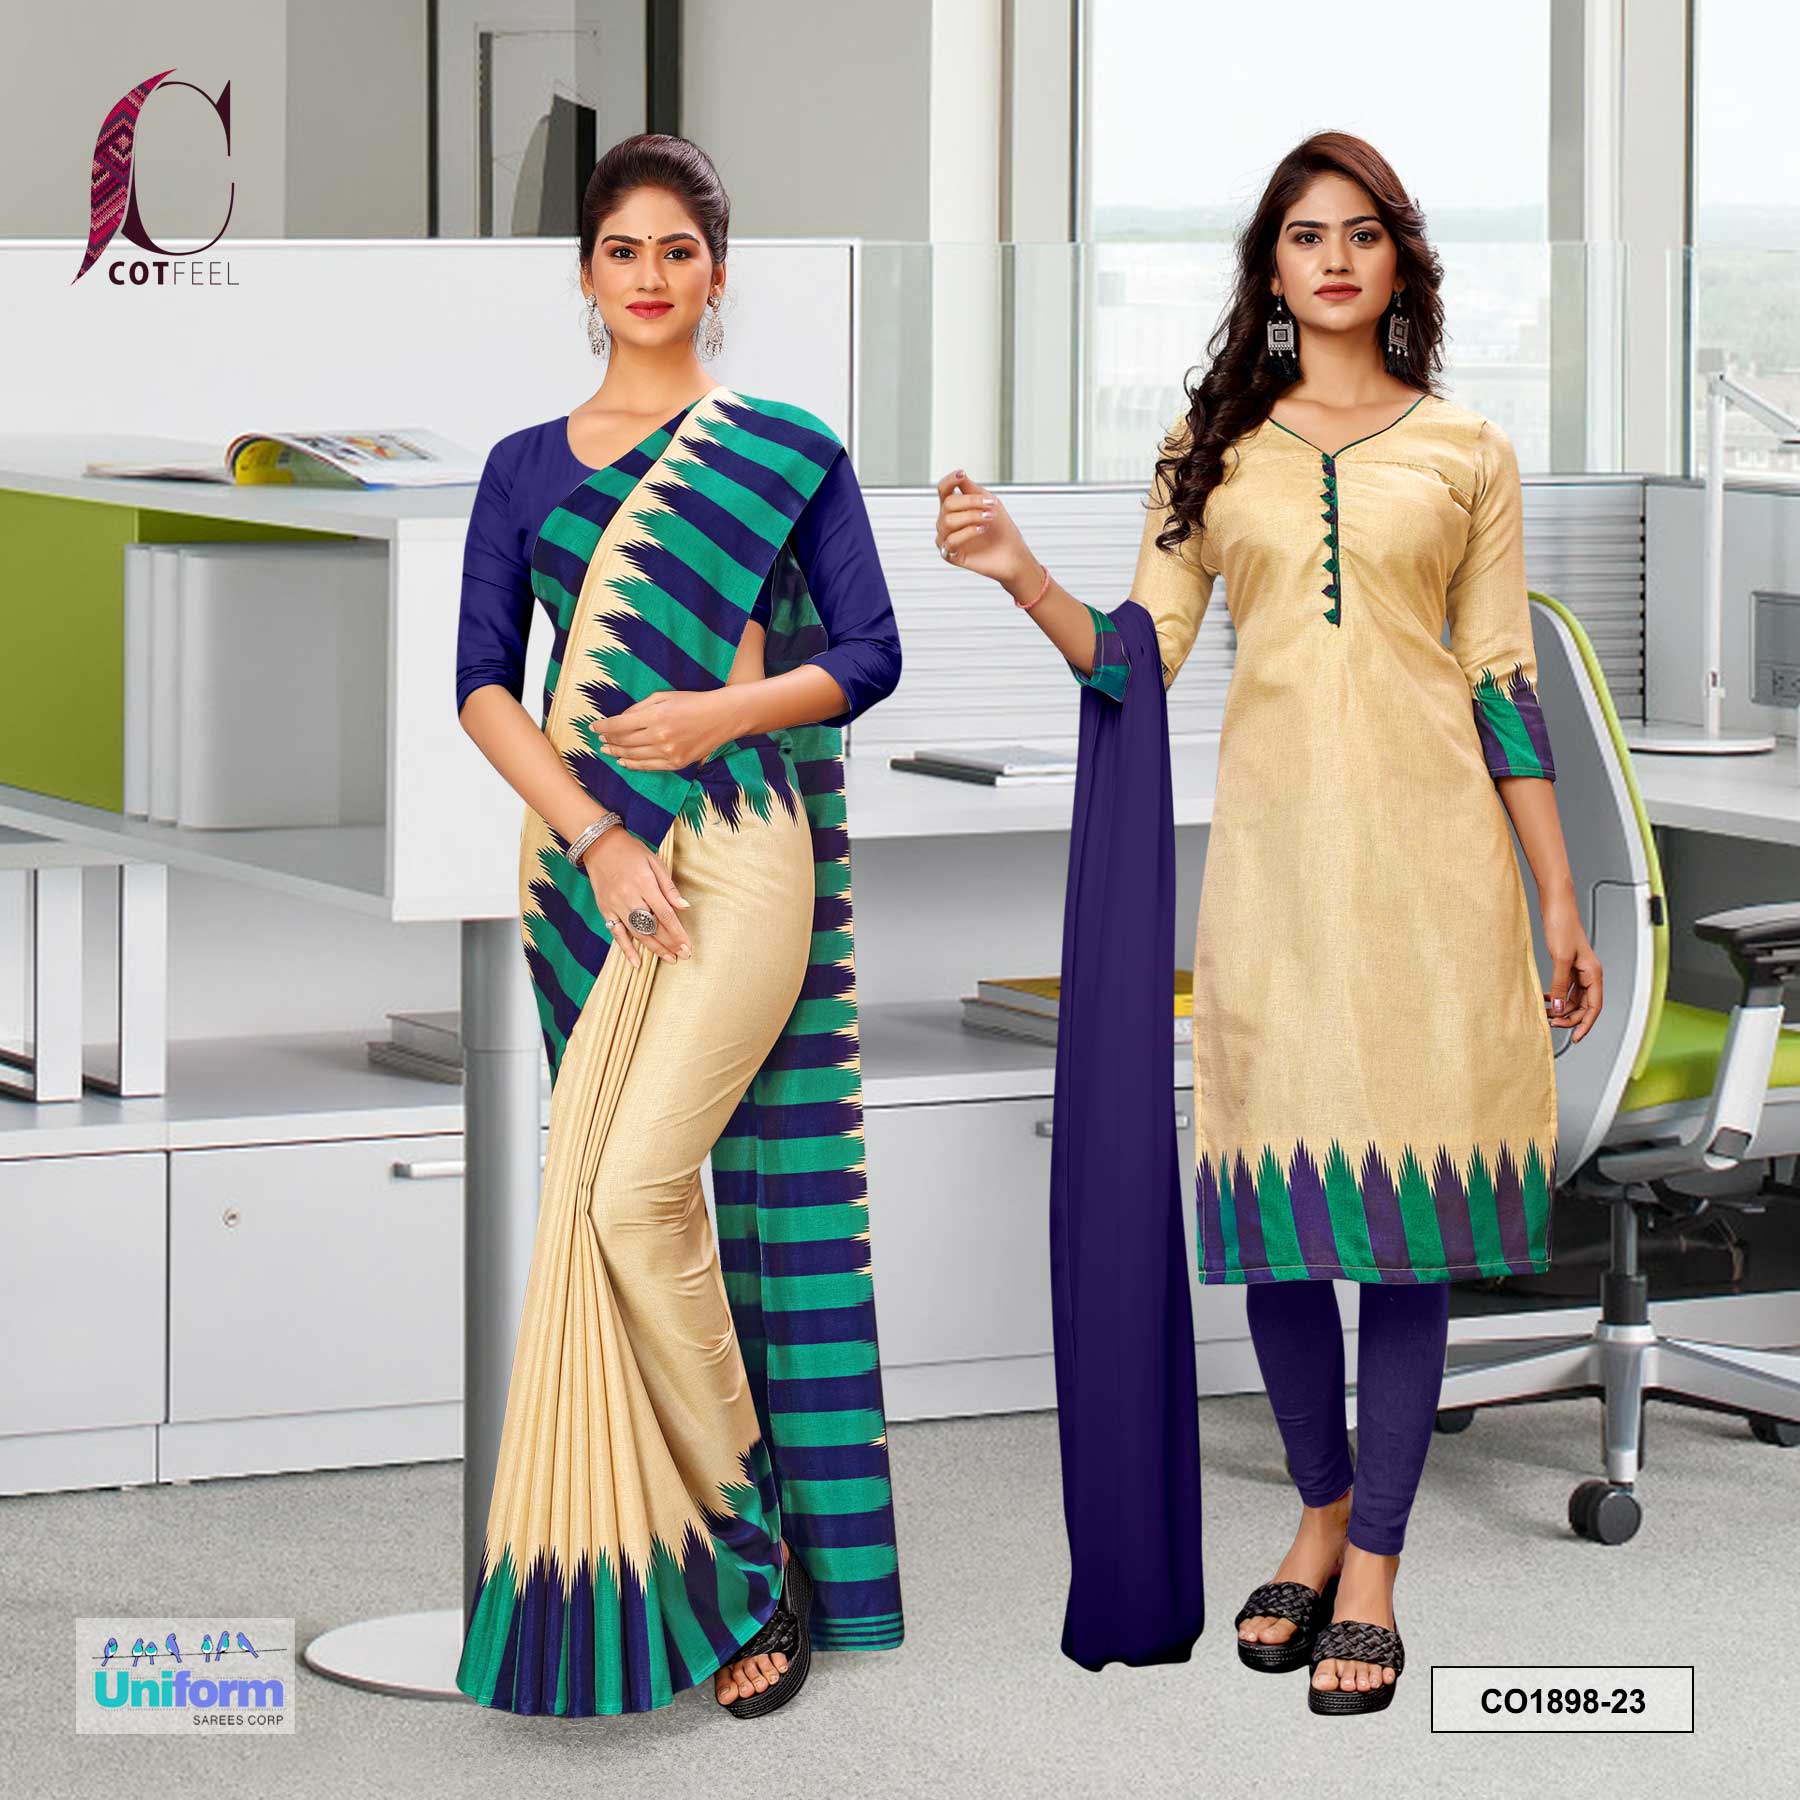 Latest Designs In Saree, Salwar Kameez, Indian Saree, Tunic, Kurti,  Designer Saris, Bollywood Outfits : C… | Bollywood outfits, Casual wear  dress, Dress materials